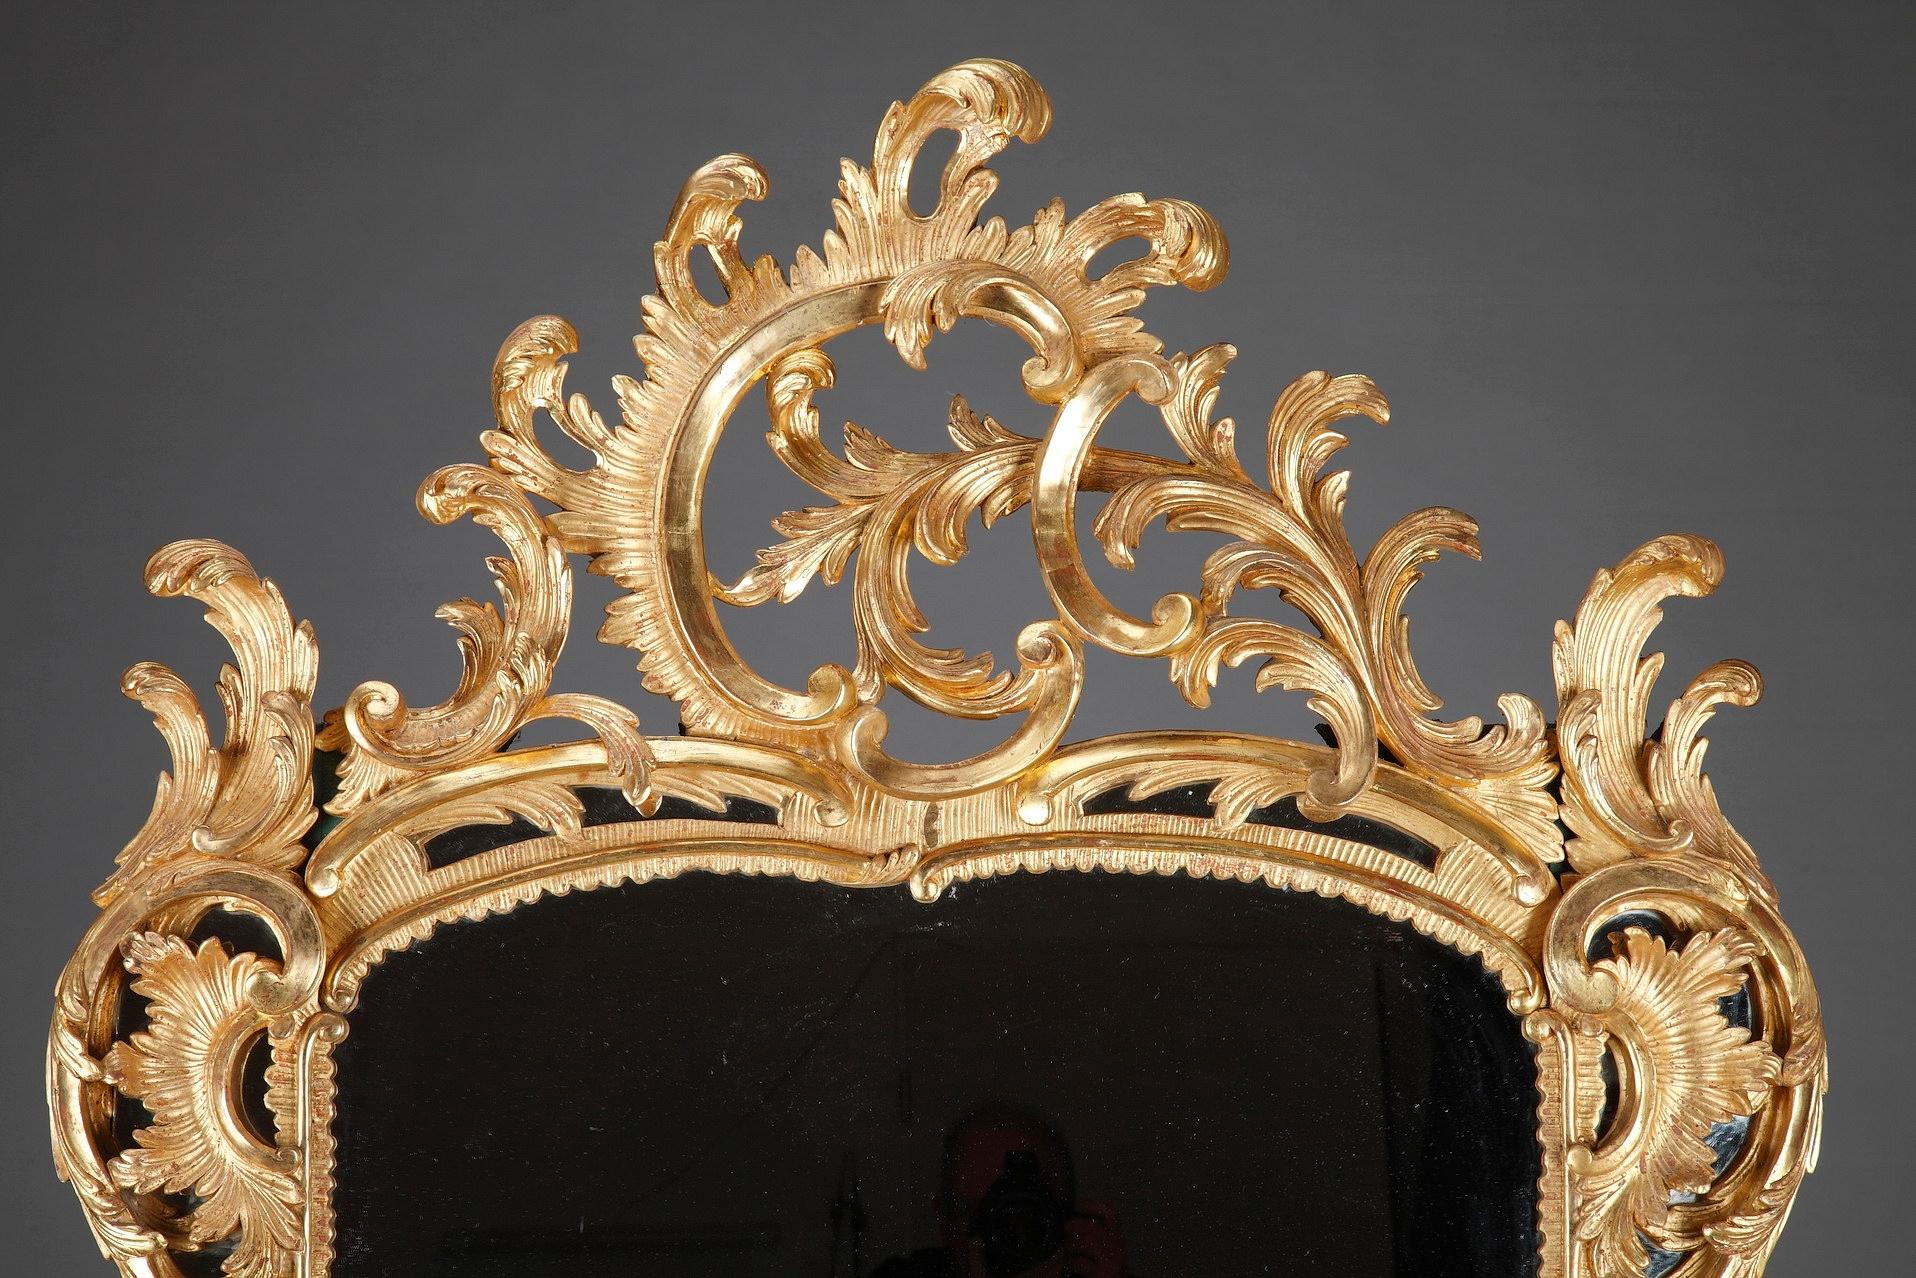 Monumentaler, im opulenten Barockstil gefertigter Spiegel. Der Spiegel hat einen ondulierenden, aufwändig geschnitzten Rahmen aus Goldholz, der reich mit Akanthusblättern, asymmetrischen Blattranken und Rocaille-Akzenten verziert ist. Zeitraum